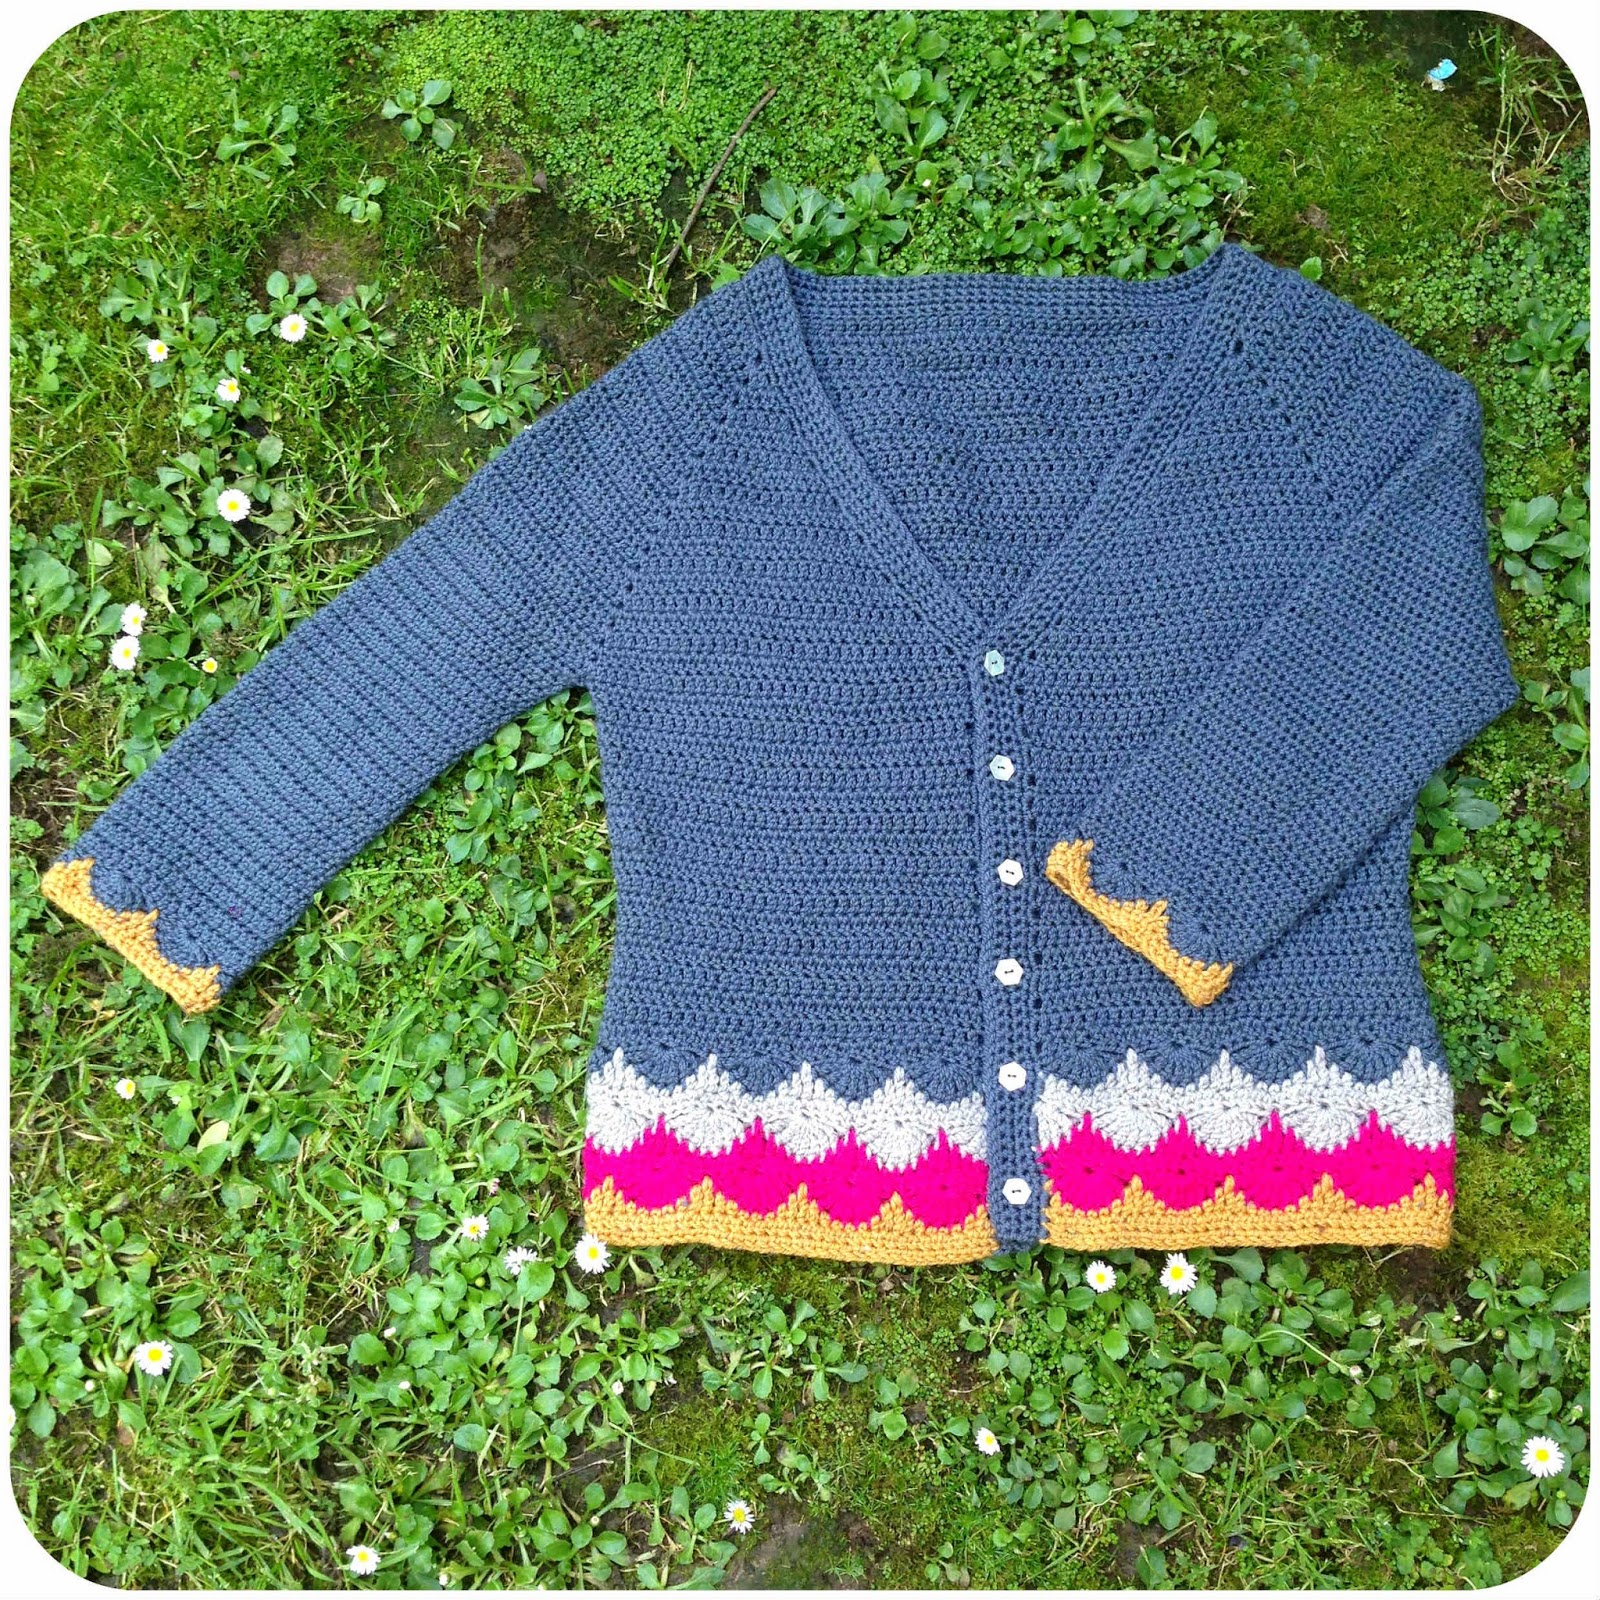 Bendigo Knitting Mills Patterns Shara Lambeth Designs Libertas Collection